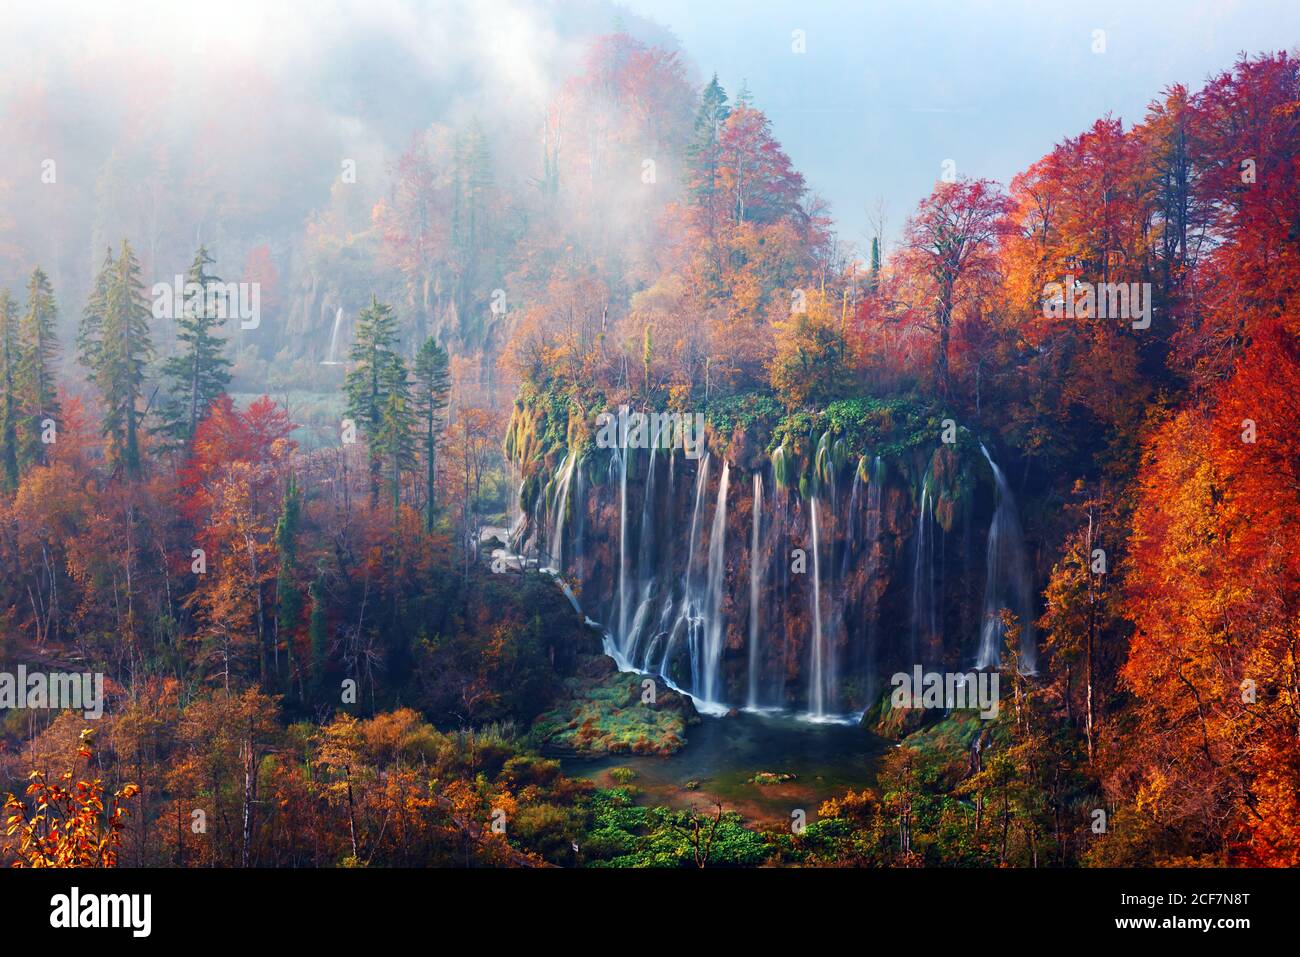 Incredibile vista sulla cascata delle nebbia nei laghi di Plitvice. Arancio autunno foresta sullo sfondo. Parco Nazionale di Plitvice, Croazia. Fotografia di paesaggio Foto Stock